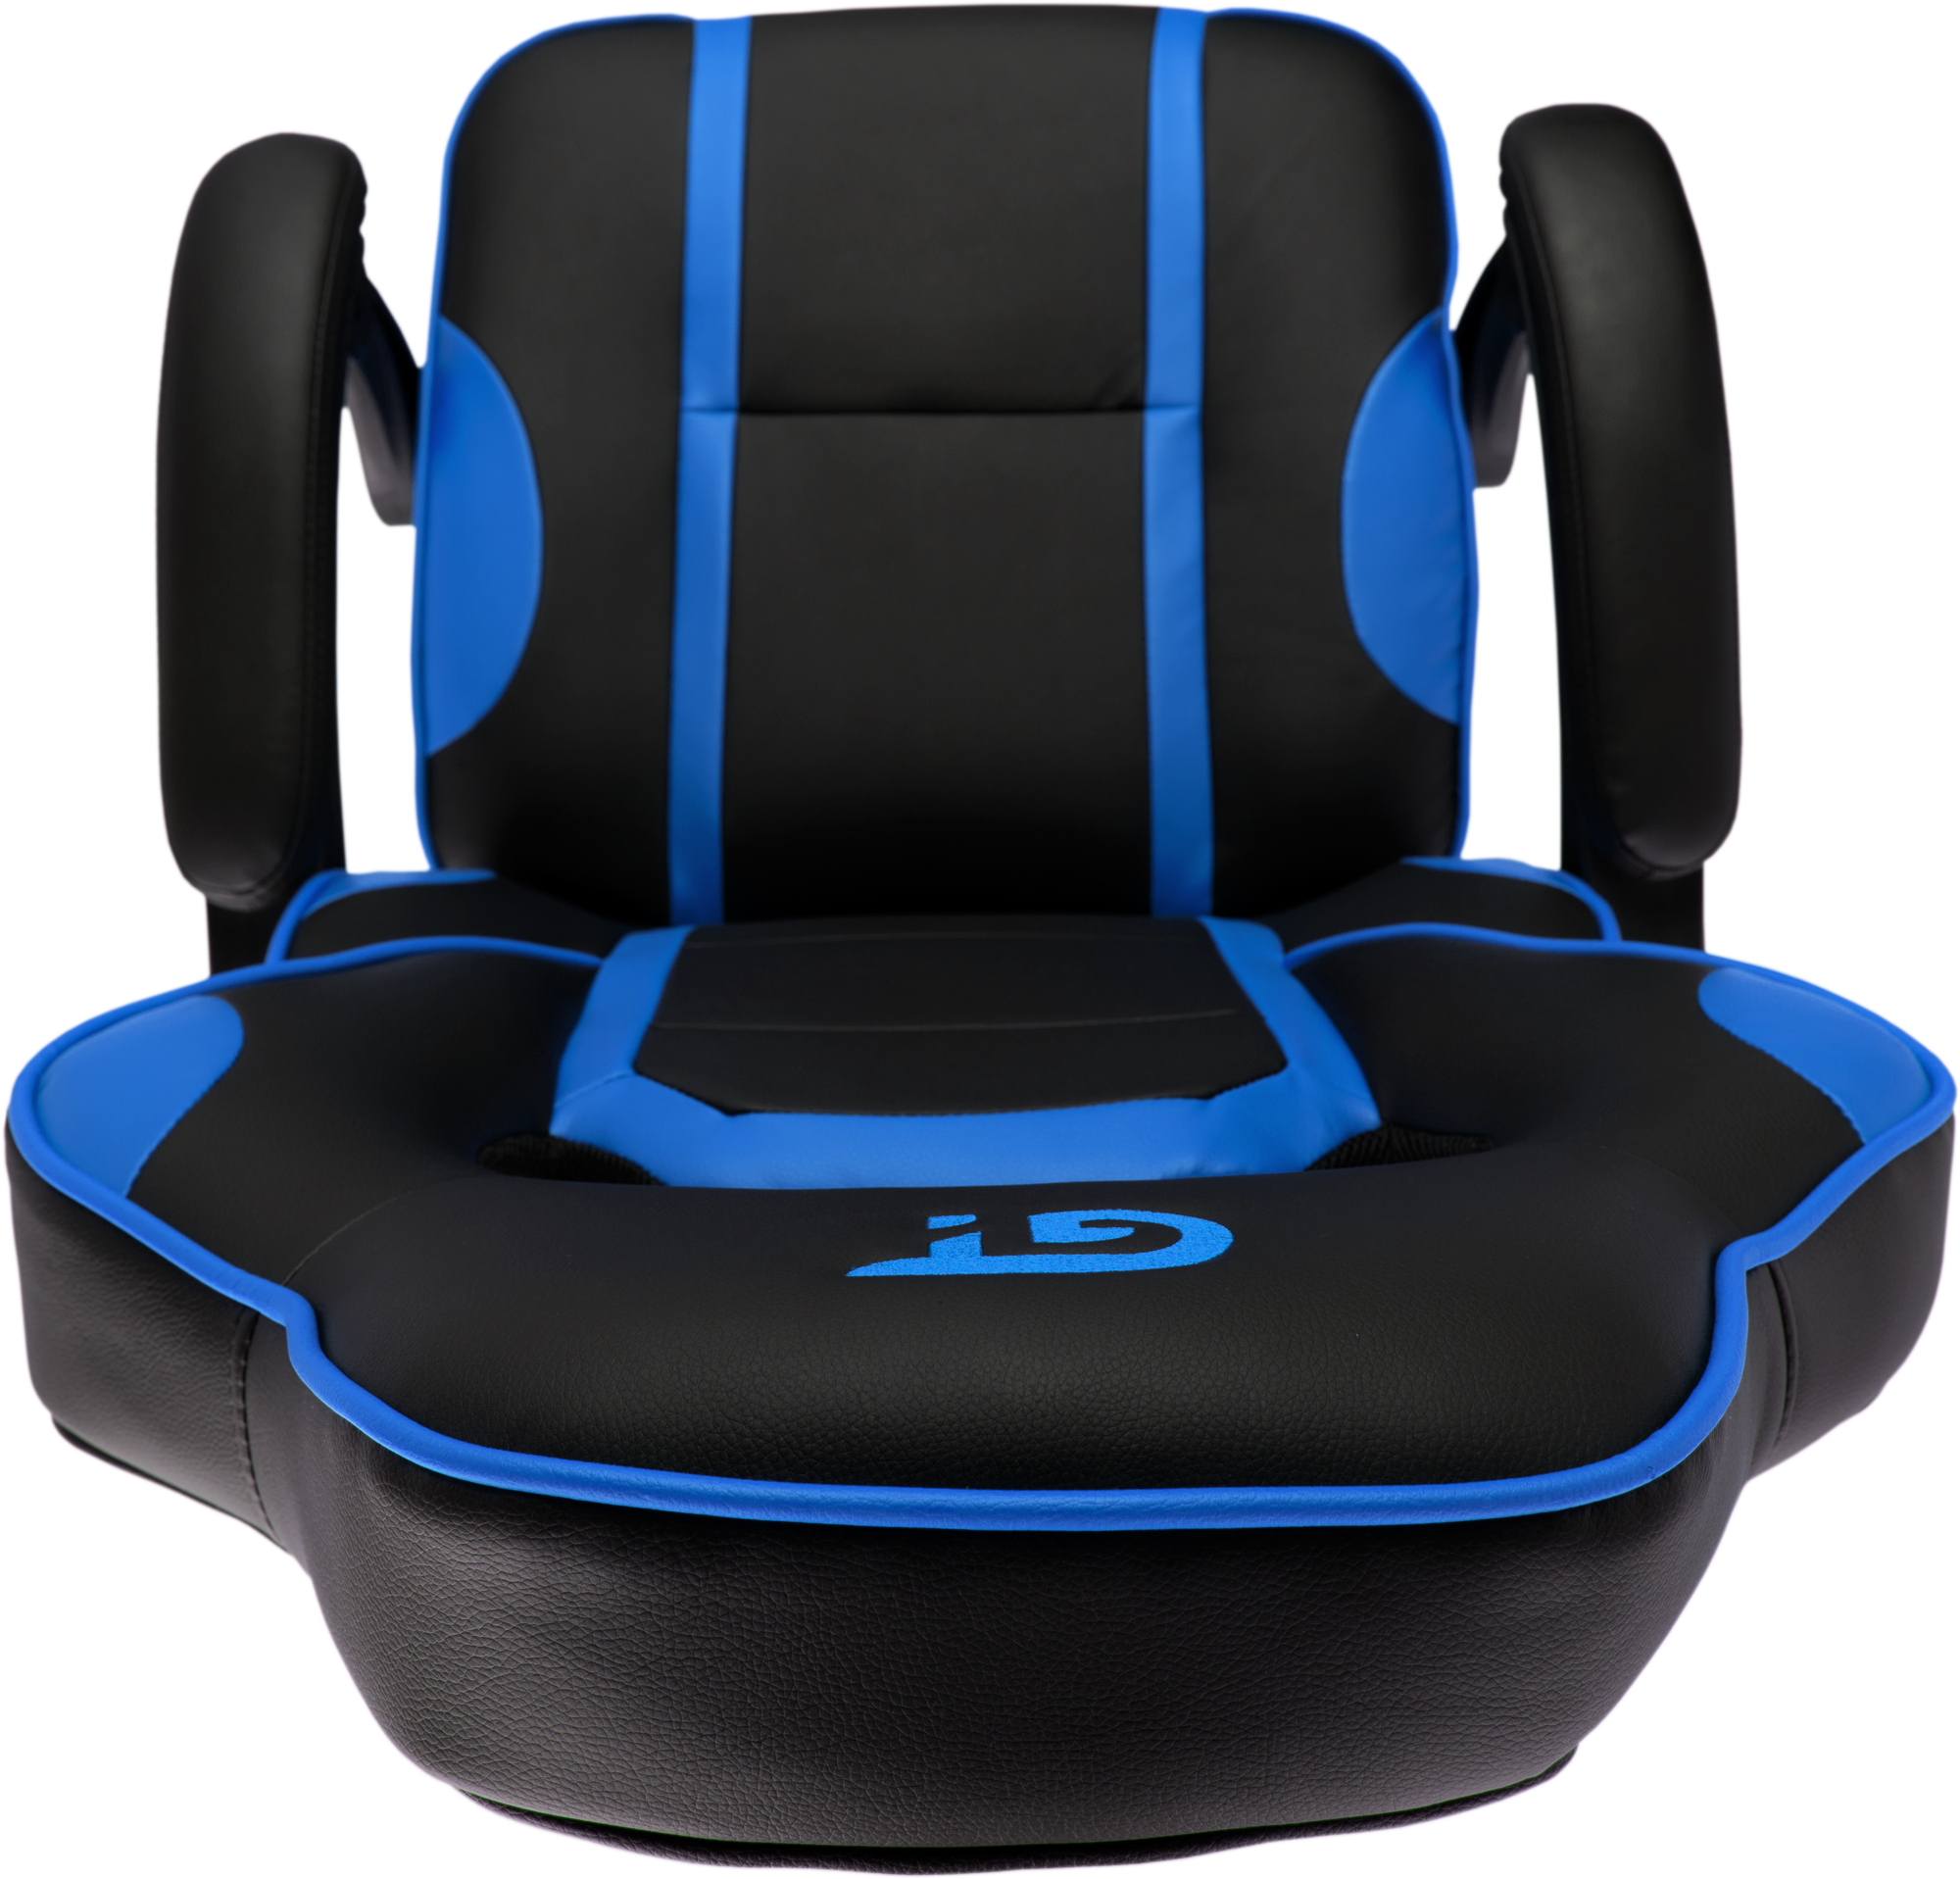 Геймерское кресло GT Racer черное с синим (X-2749-1 Black/Blue) - фото 10